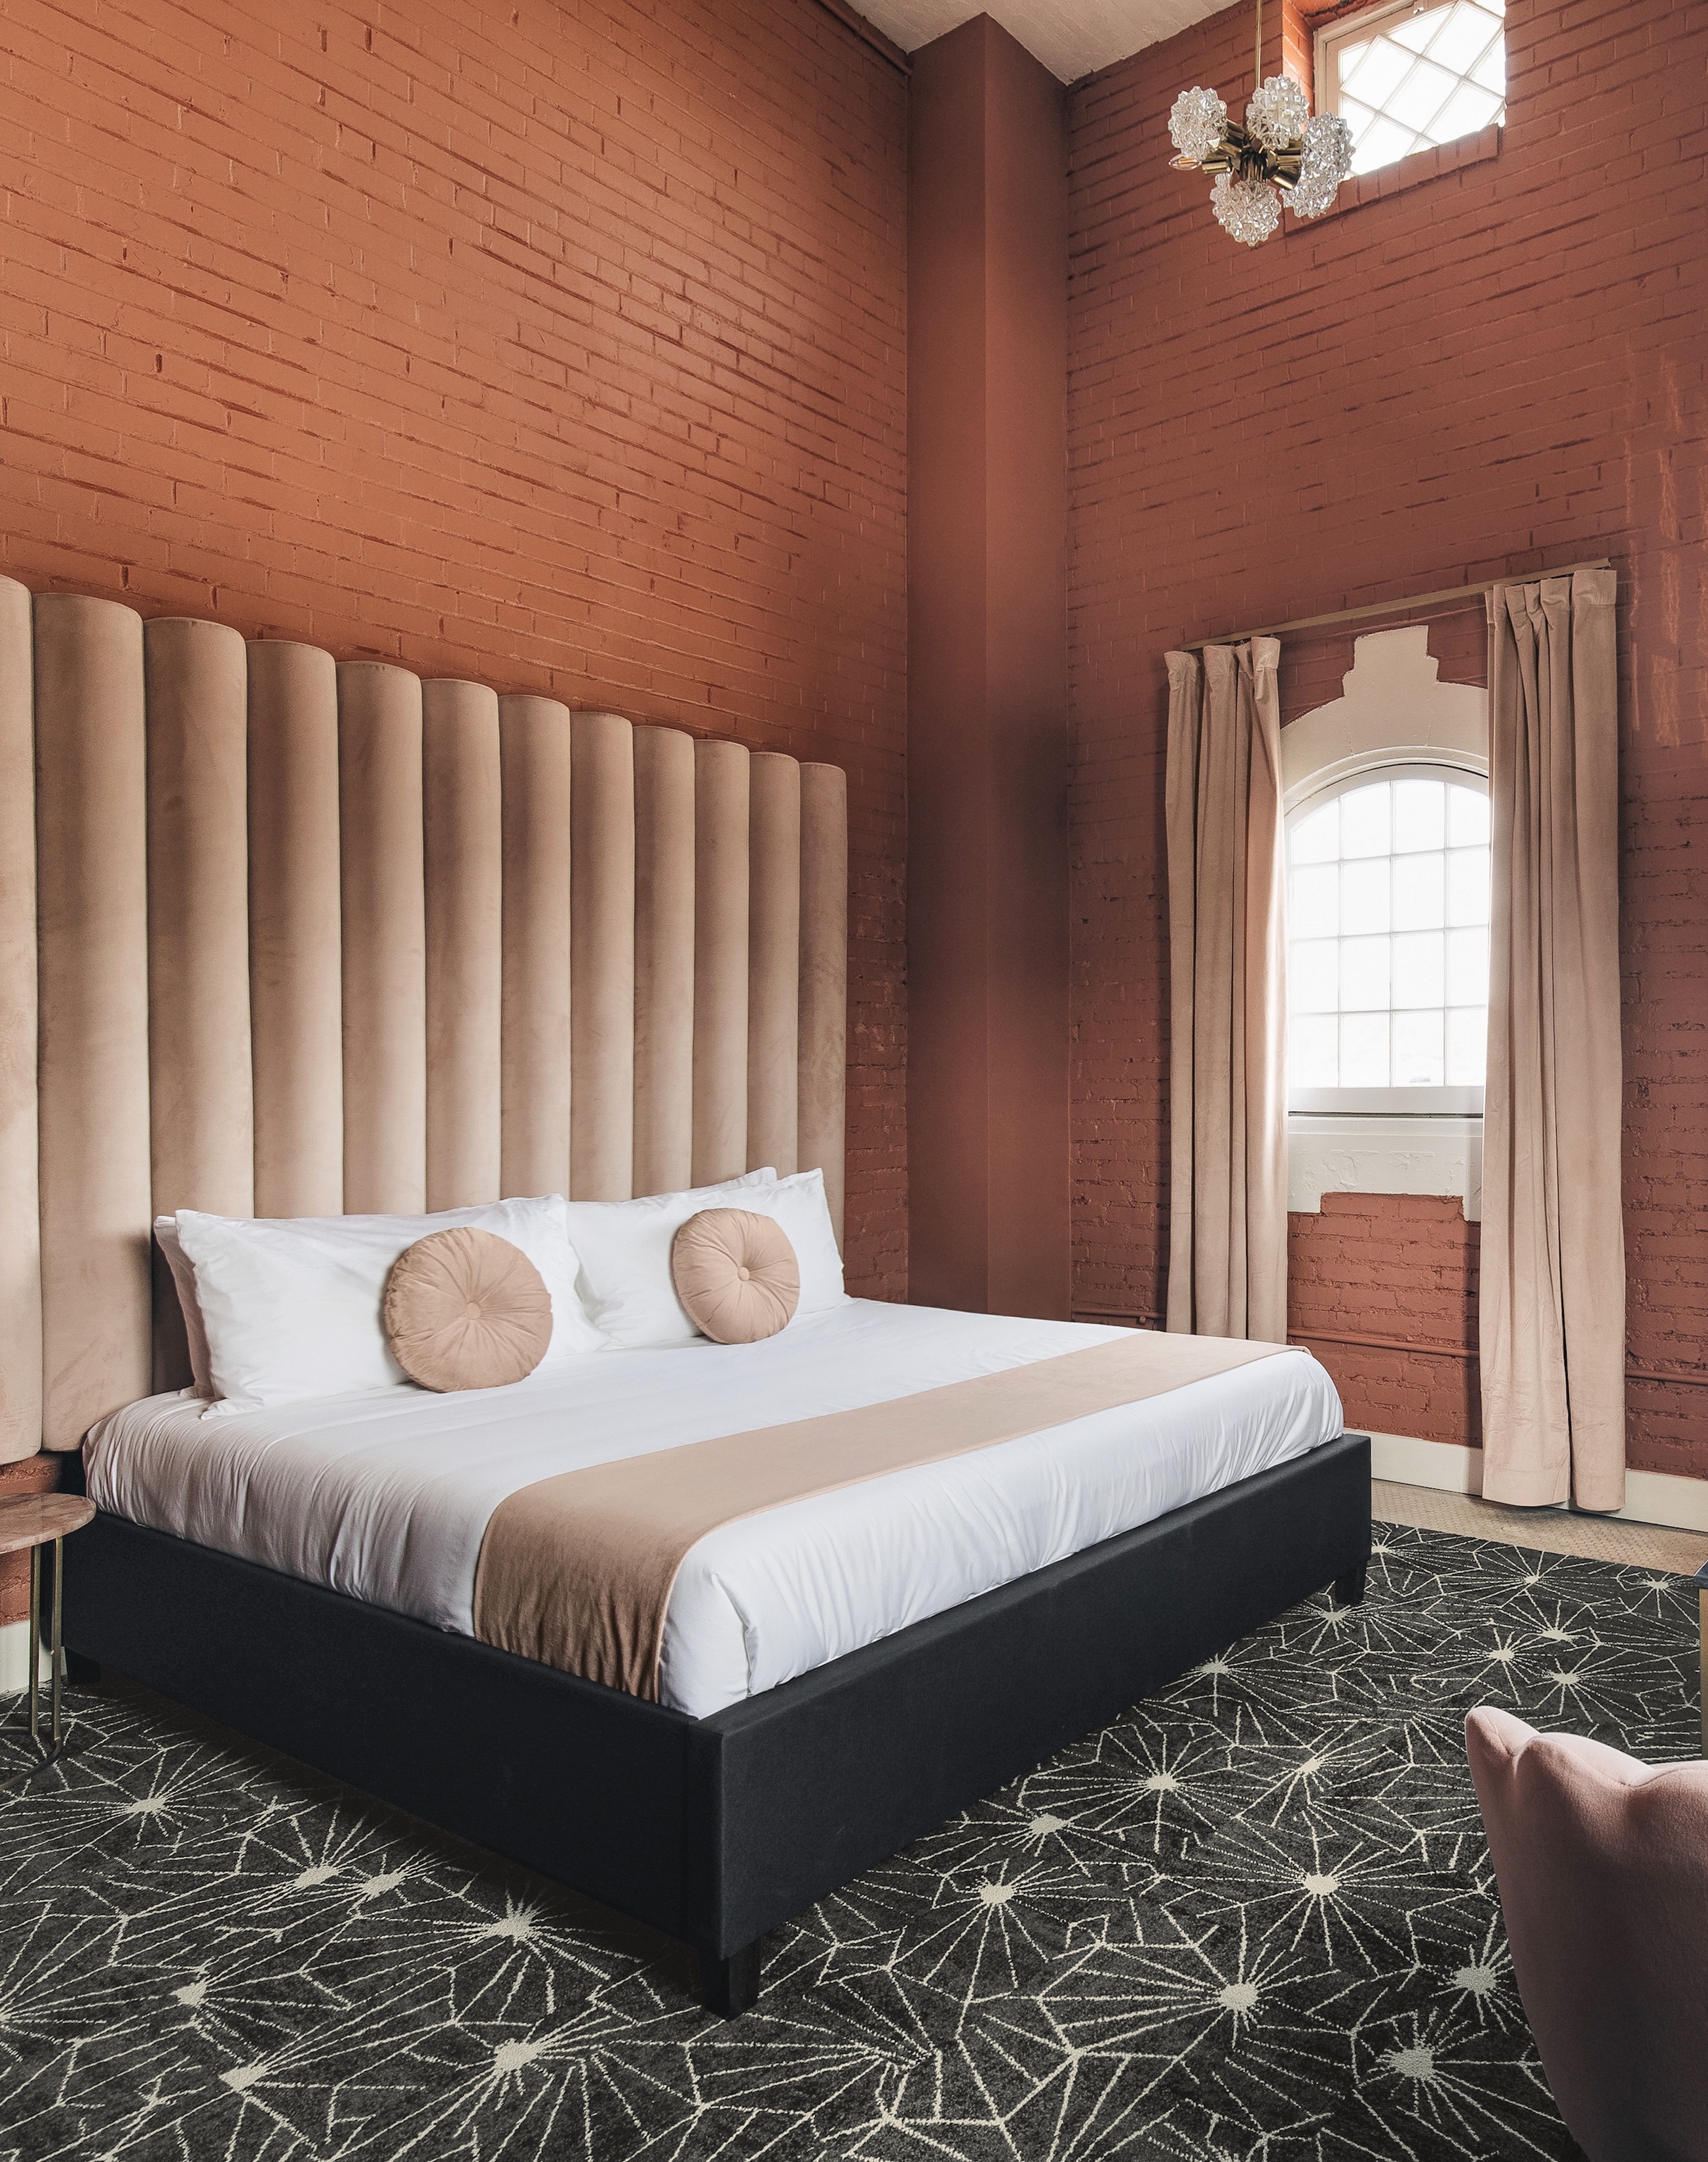 FLOR hospitality image, bedroom showing Skyfall in Flint